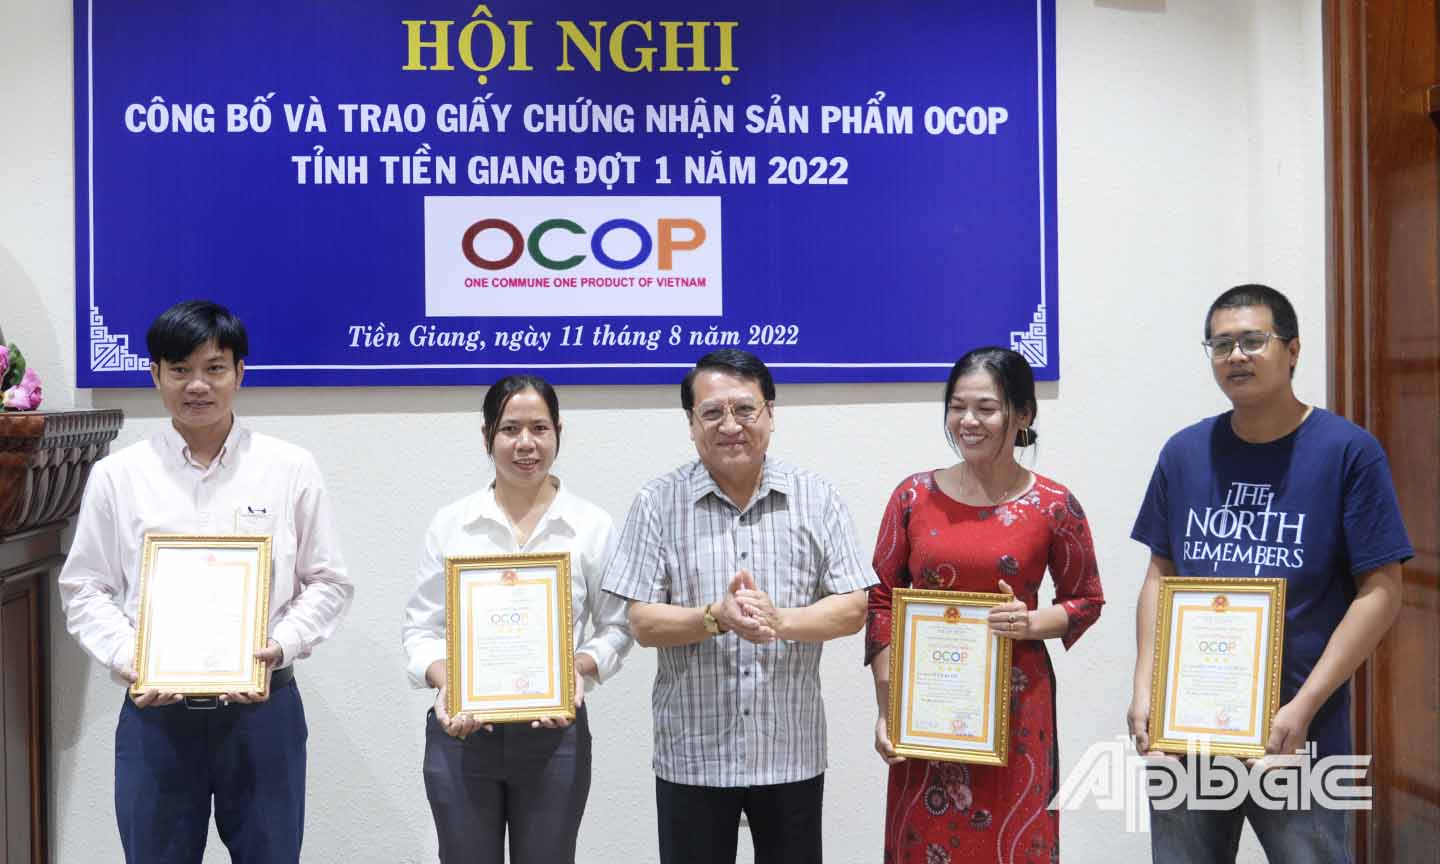 Đồng chí Phạm Văn Trọng trao giấy chứng nhận cho các chủ thể sản xuất có sản phẩm được phân hạng OCOP.